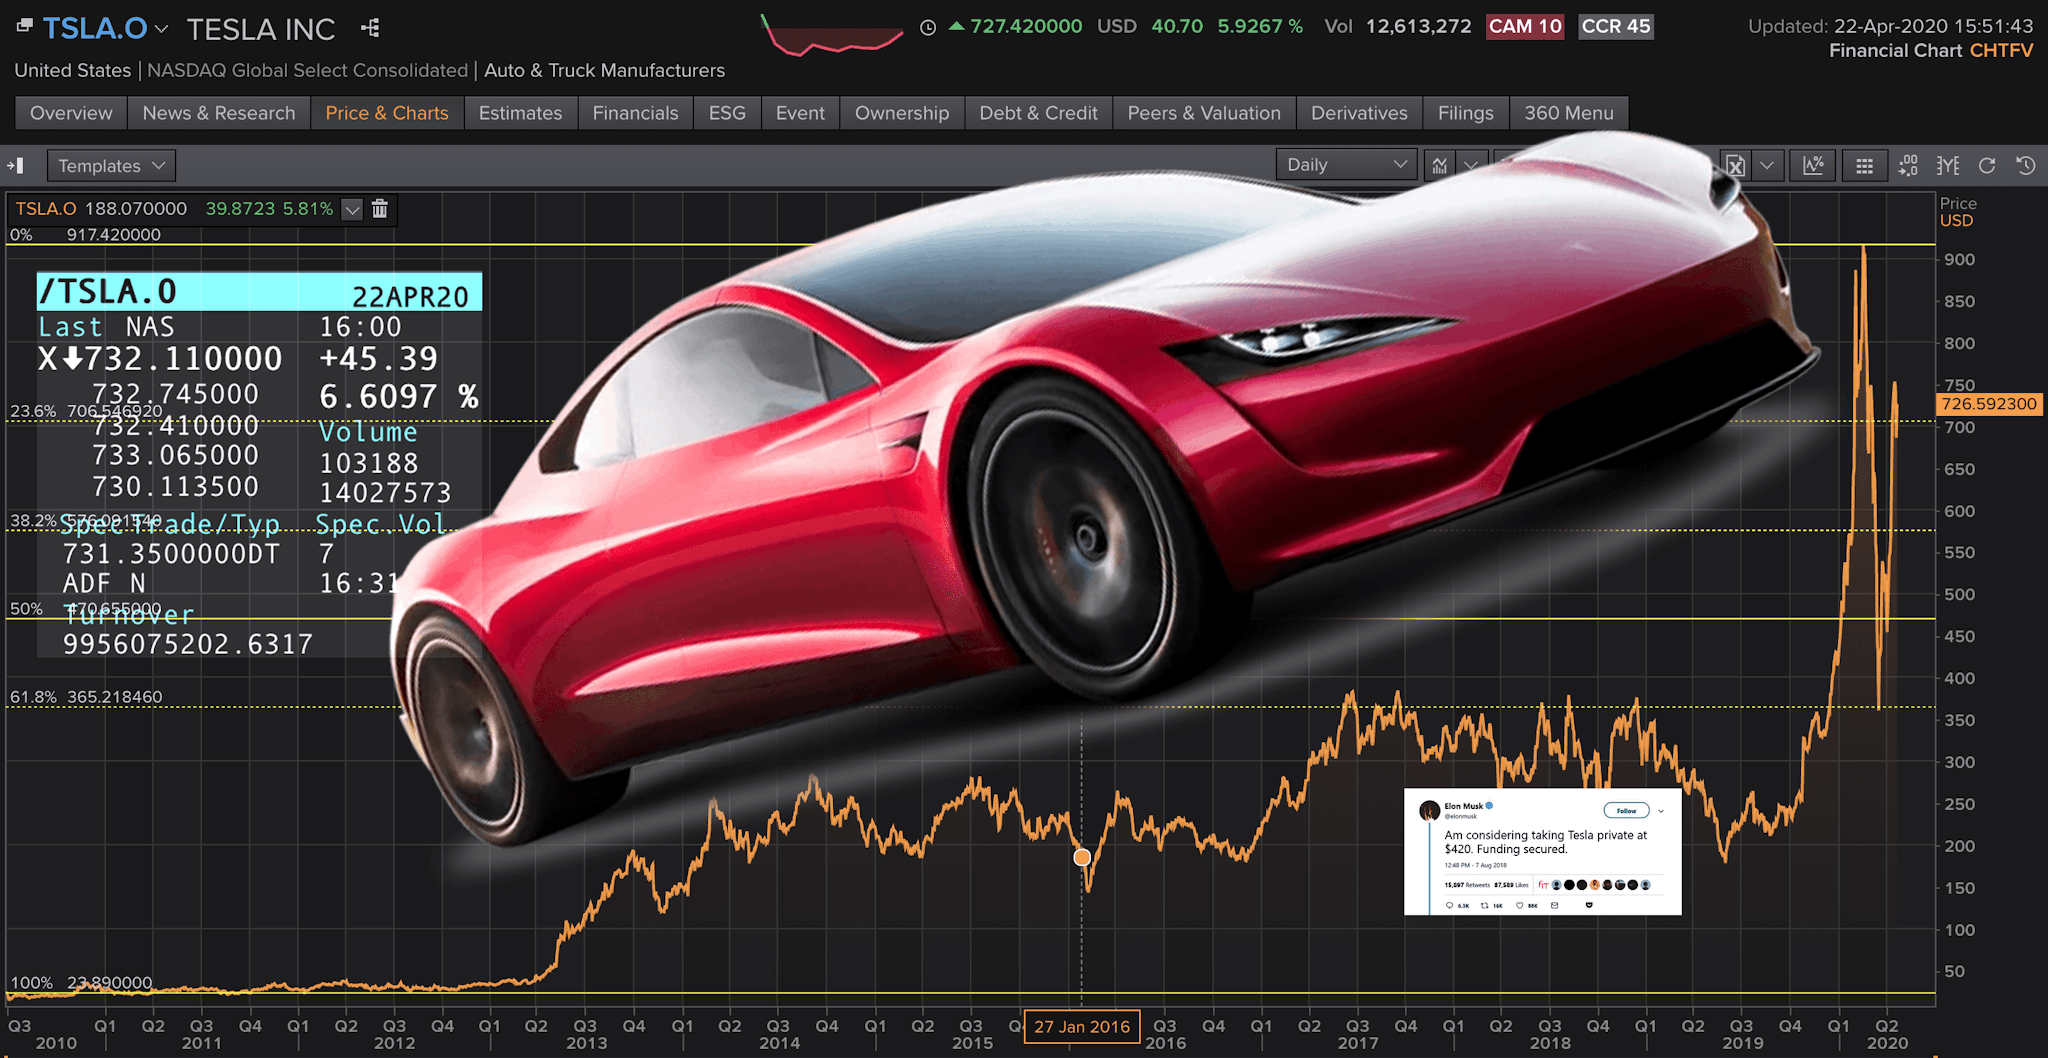 Si vous aviez acheté des actions Tesla plutôt qu’un roadster il y a dix ans, voici combien vous pourriez avoir